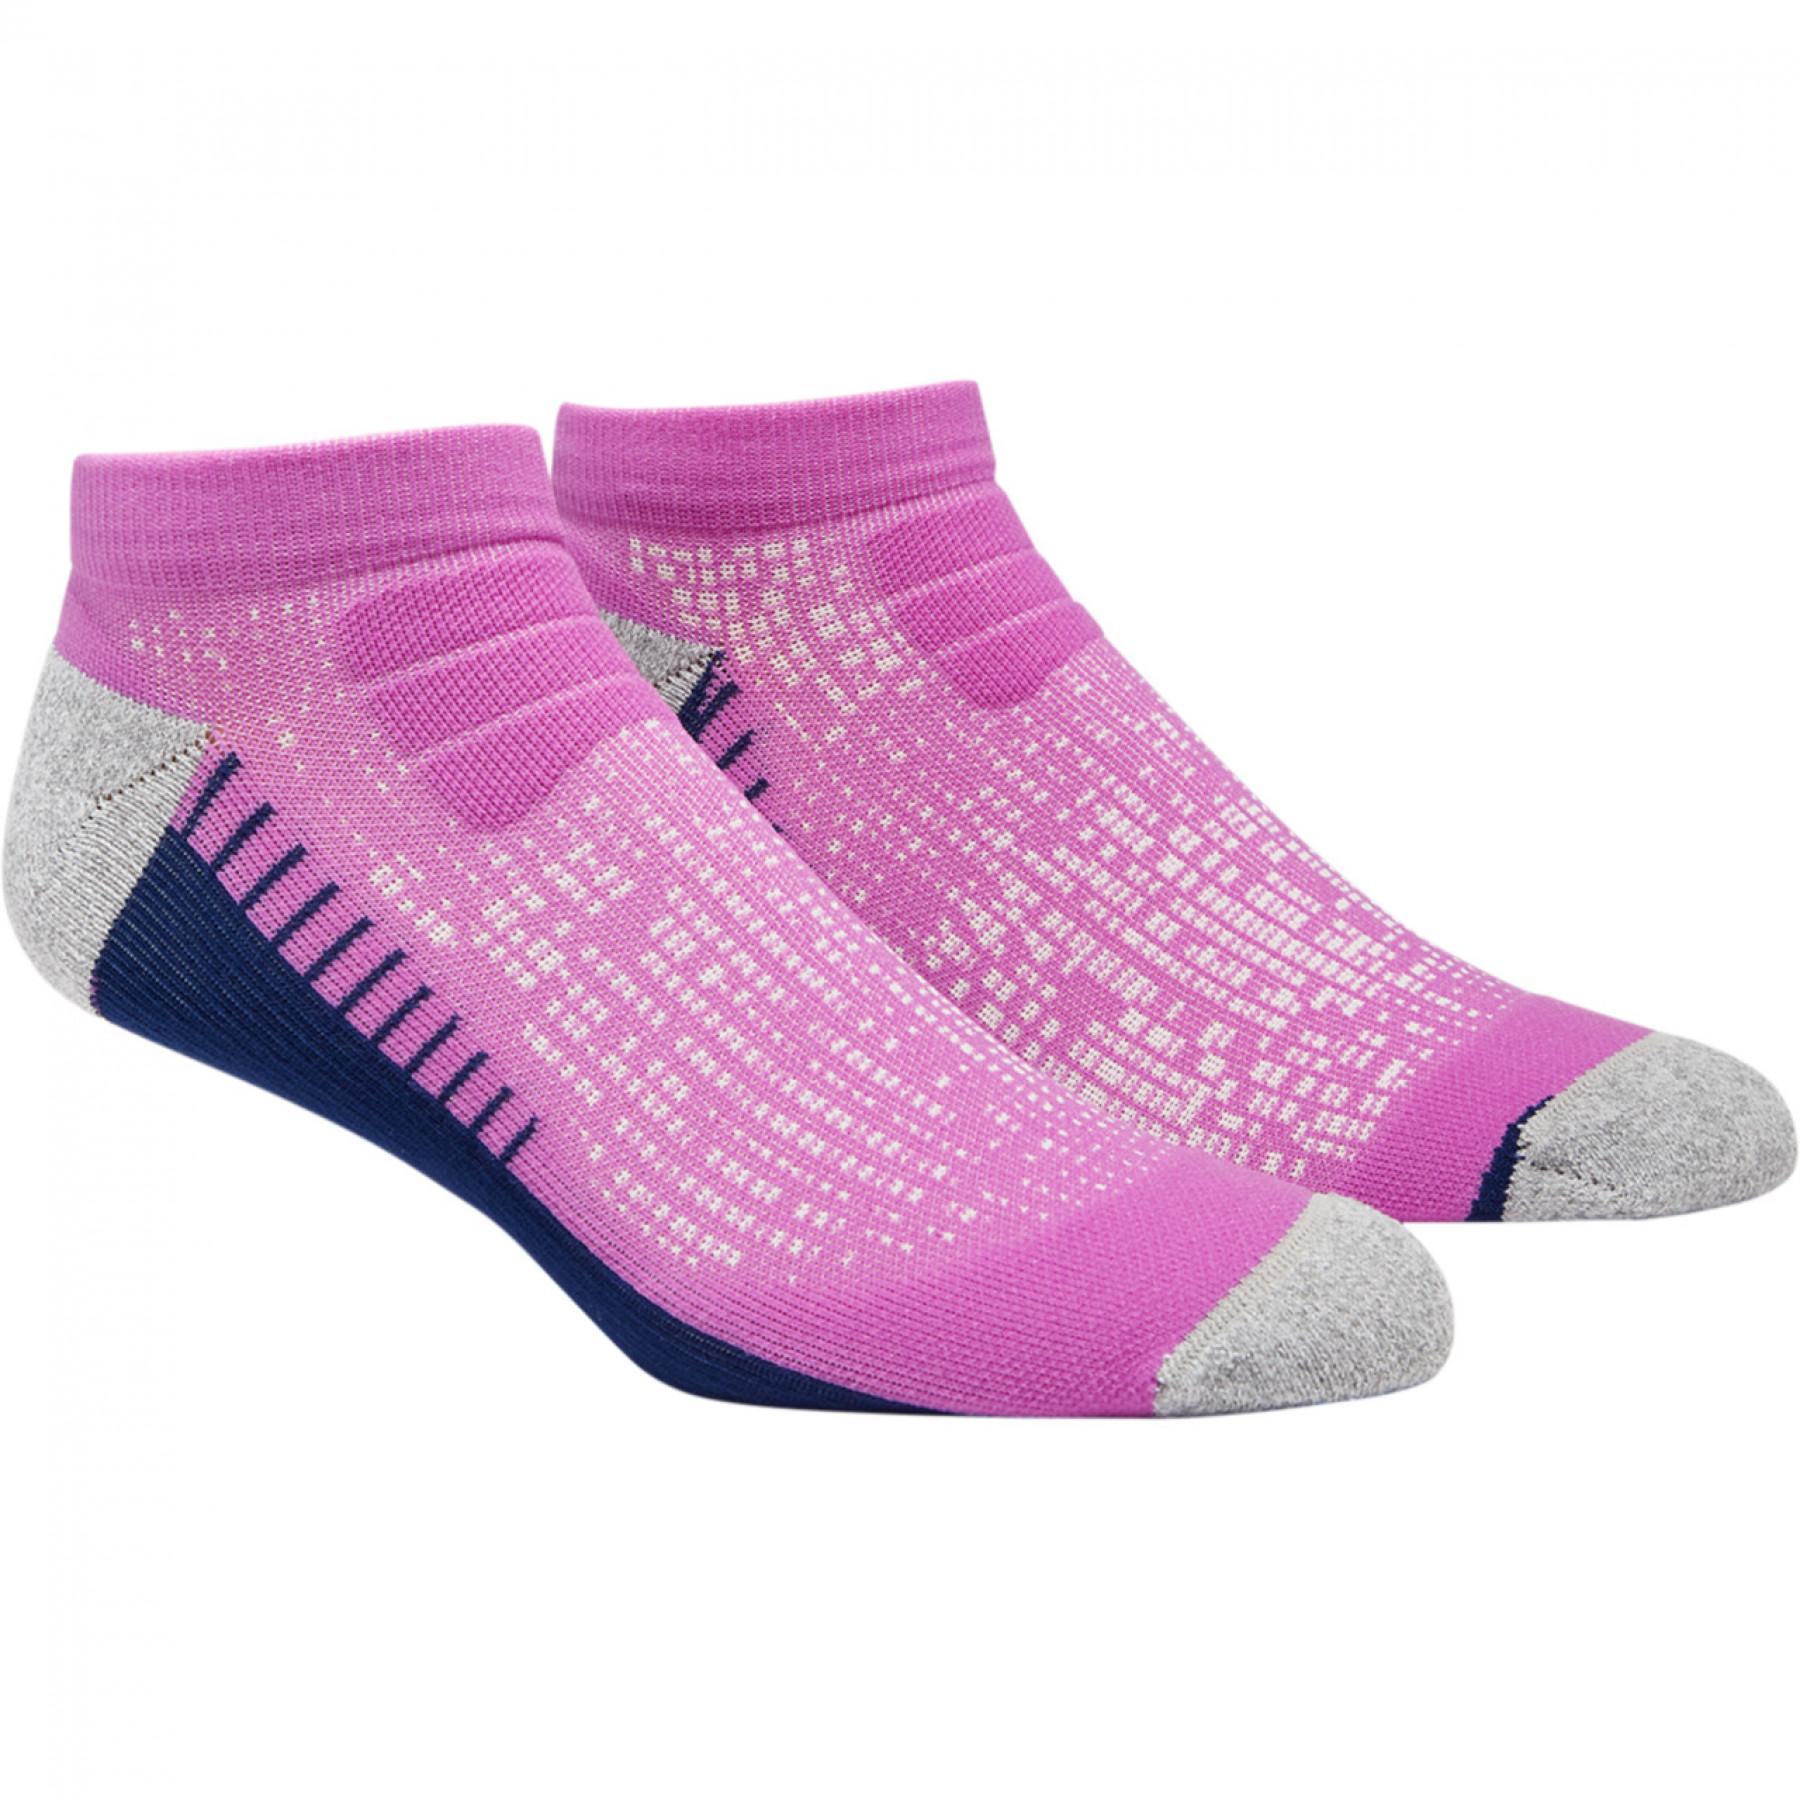 Socken Asics Ultra Comfort Ankle